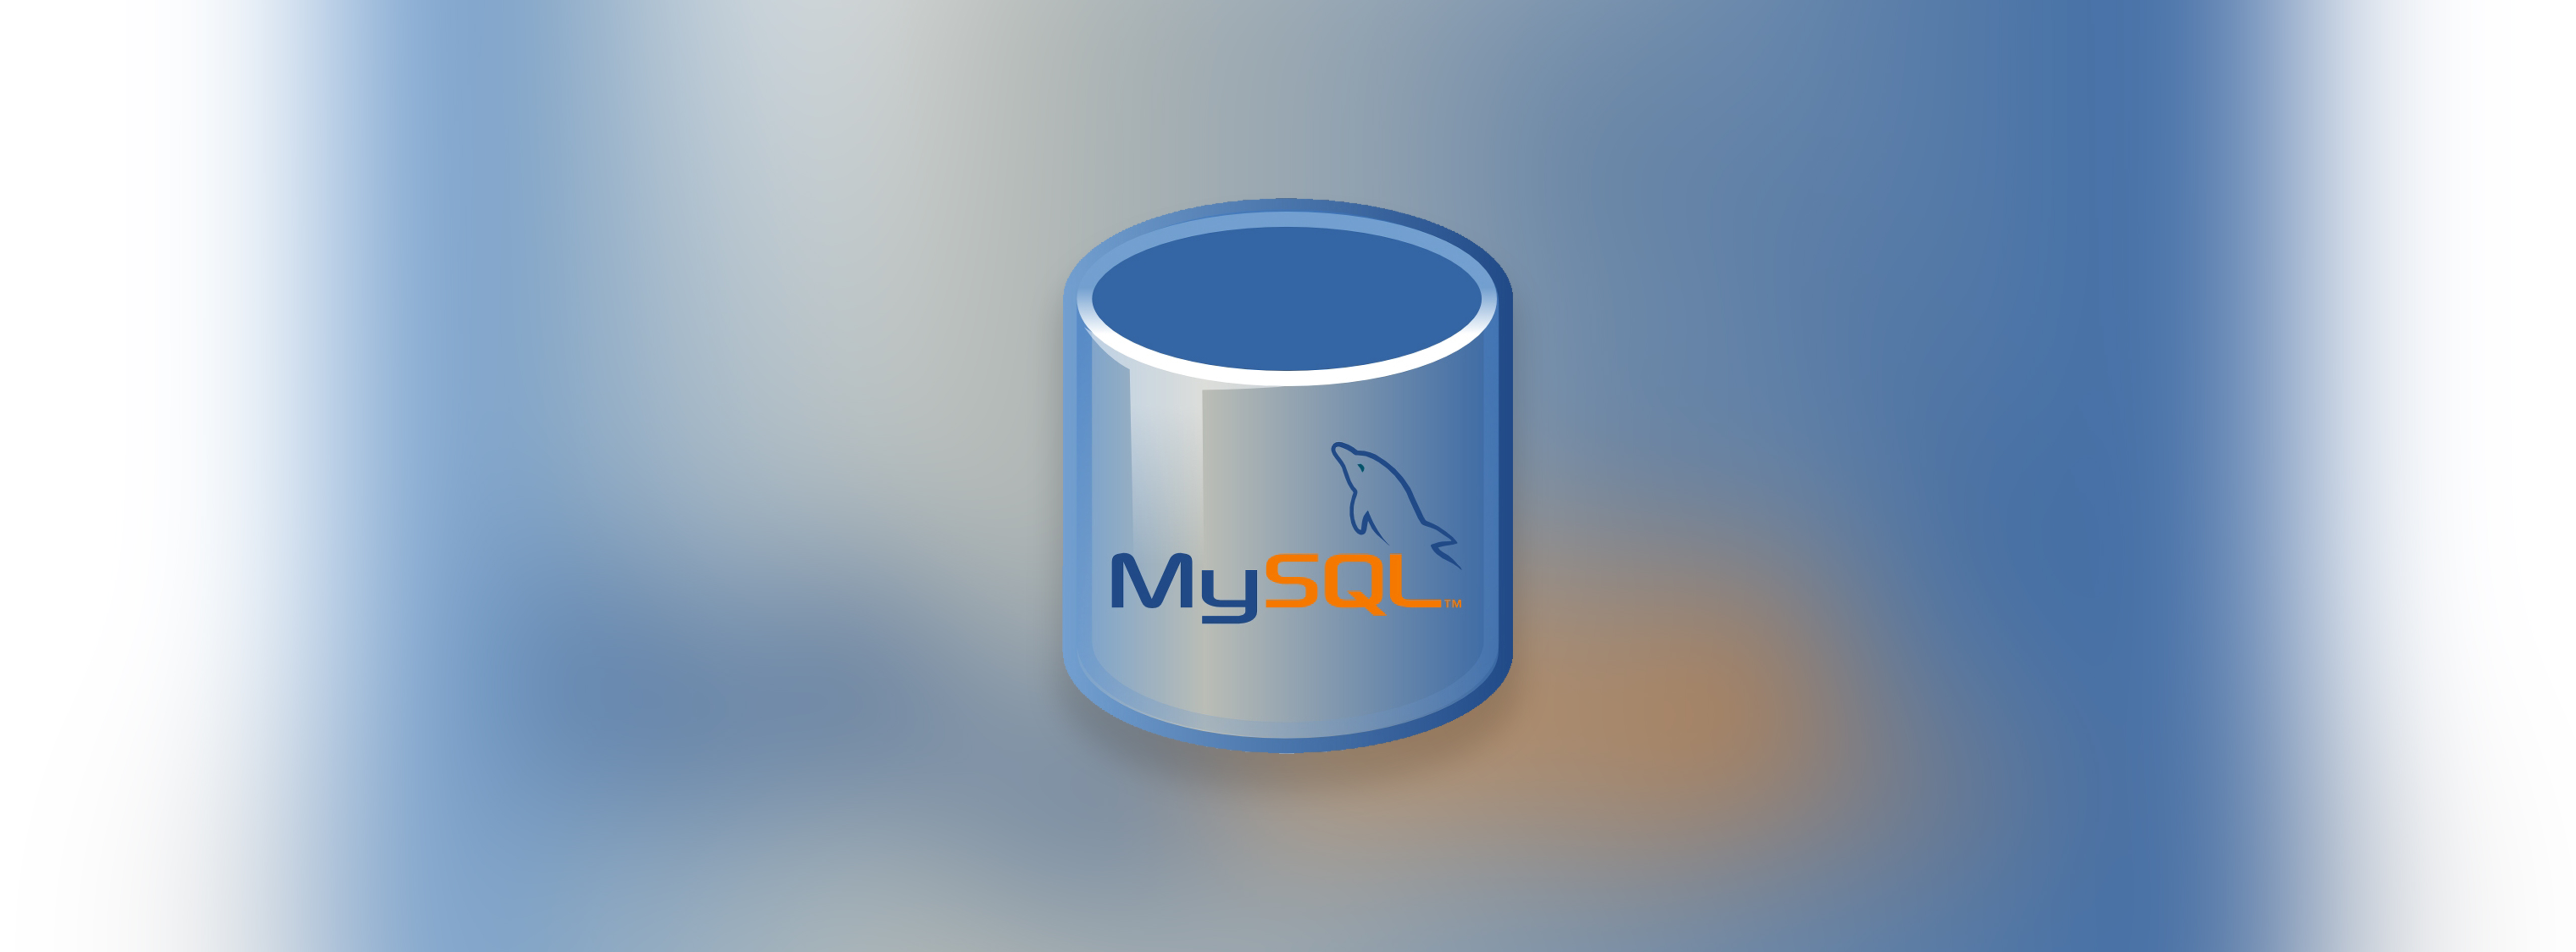 解决宝塔 MySQL 自动停止的问题